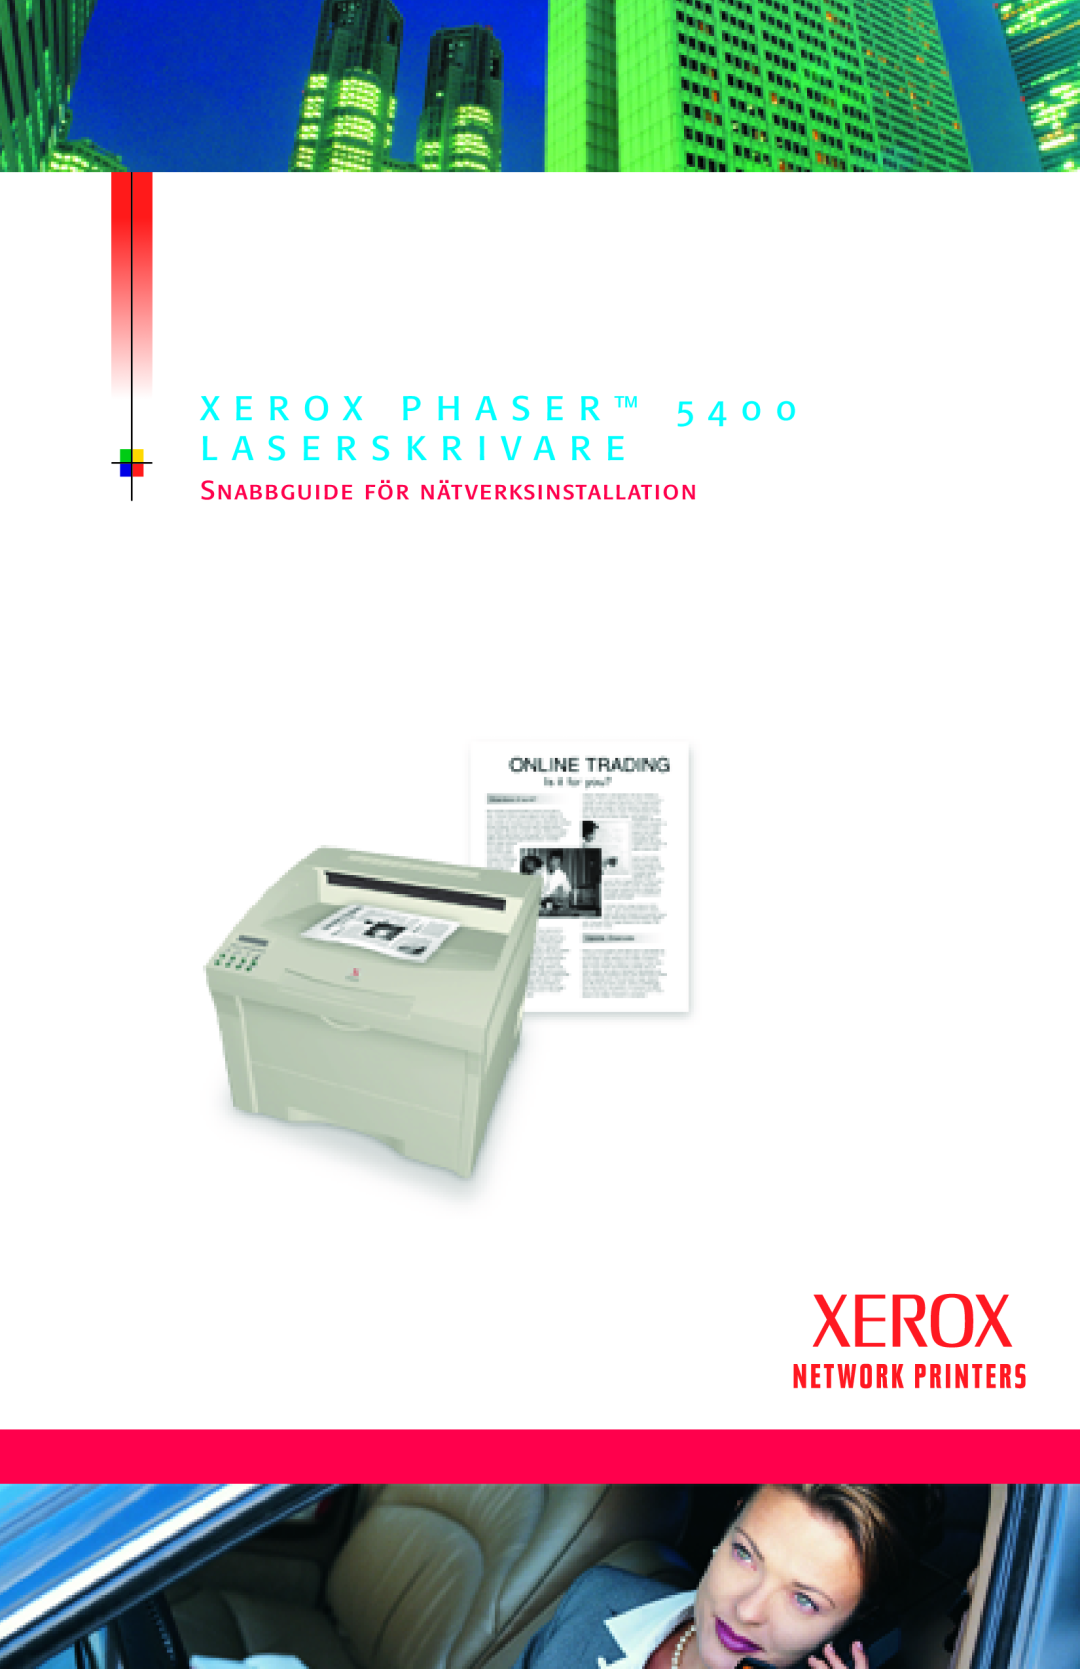 Xerox 5400 manual X E R O X P H A S E R 5 4 0, L A S E R S K R I V A R E, Snabbguide för nätverksinstallation 